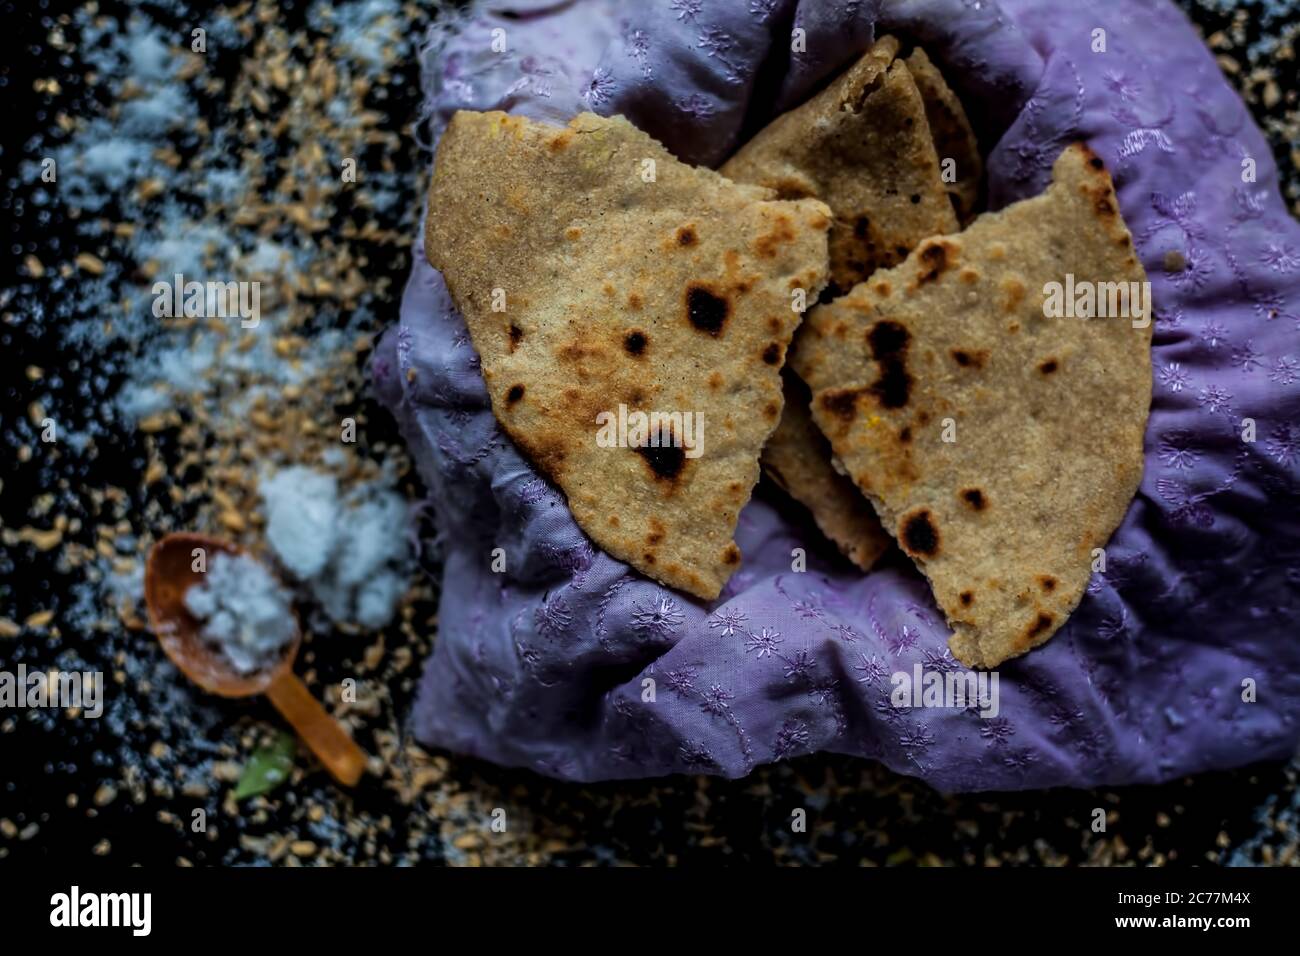 Nahaufnahme von runden Brot Bhakri auf der schwarzen Holzoberfläche zusammen mit etwas rohem Vollkorn, Salz in einem Behälter. Schuss von Bhakri in einem Container auf Stockfoto